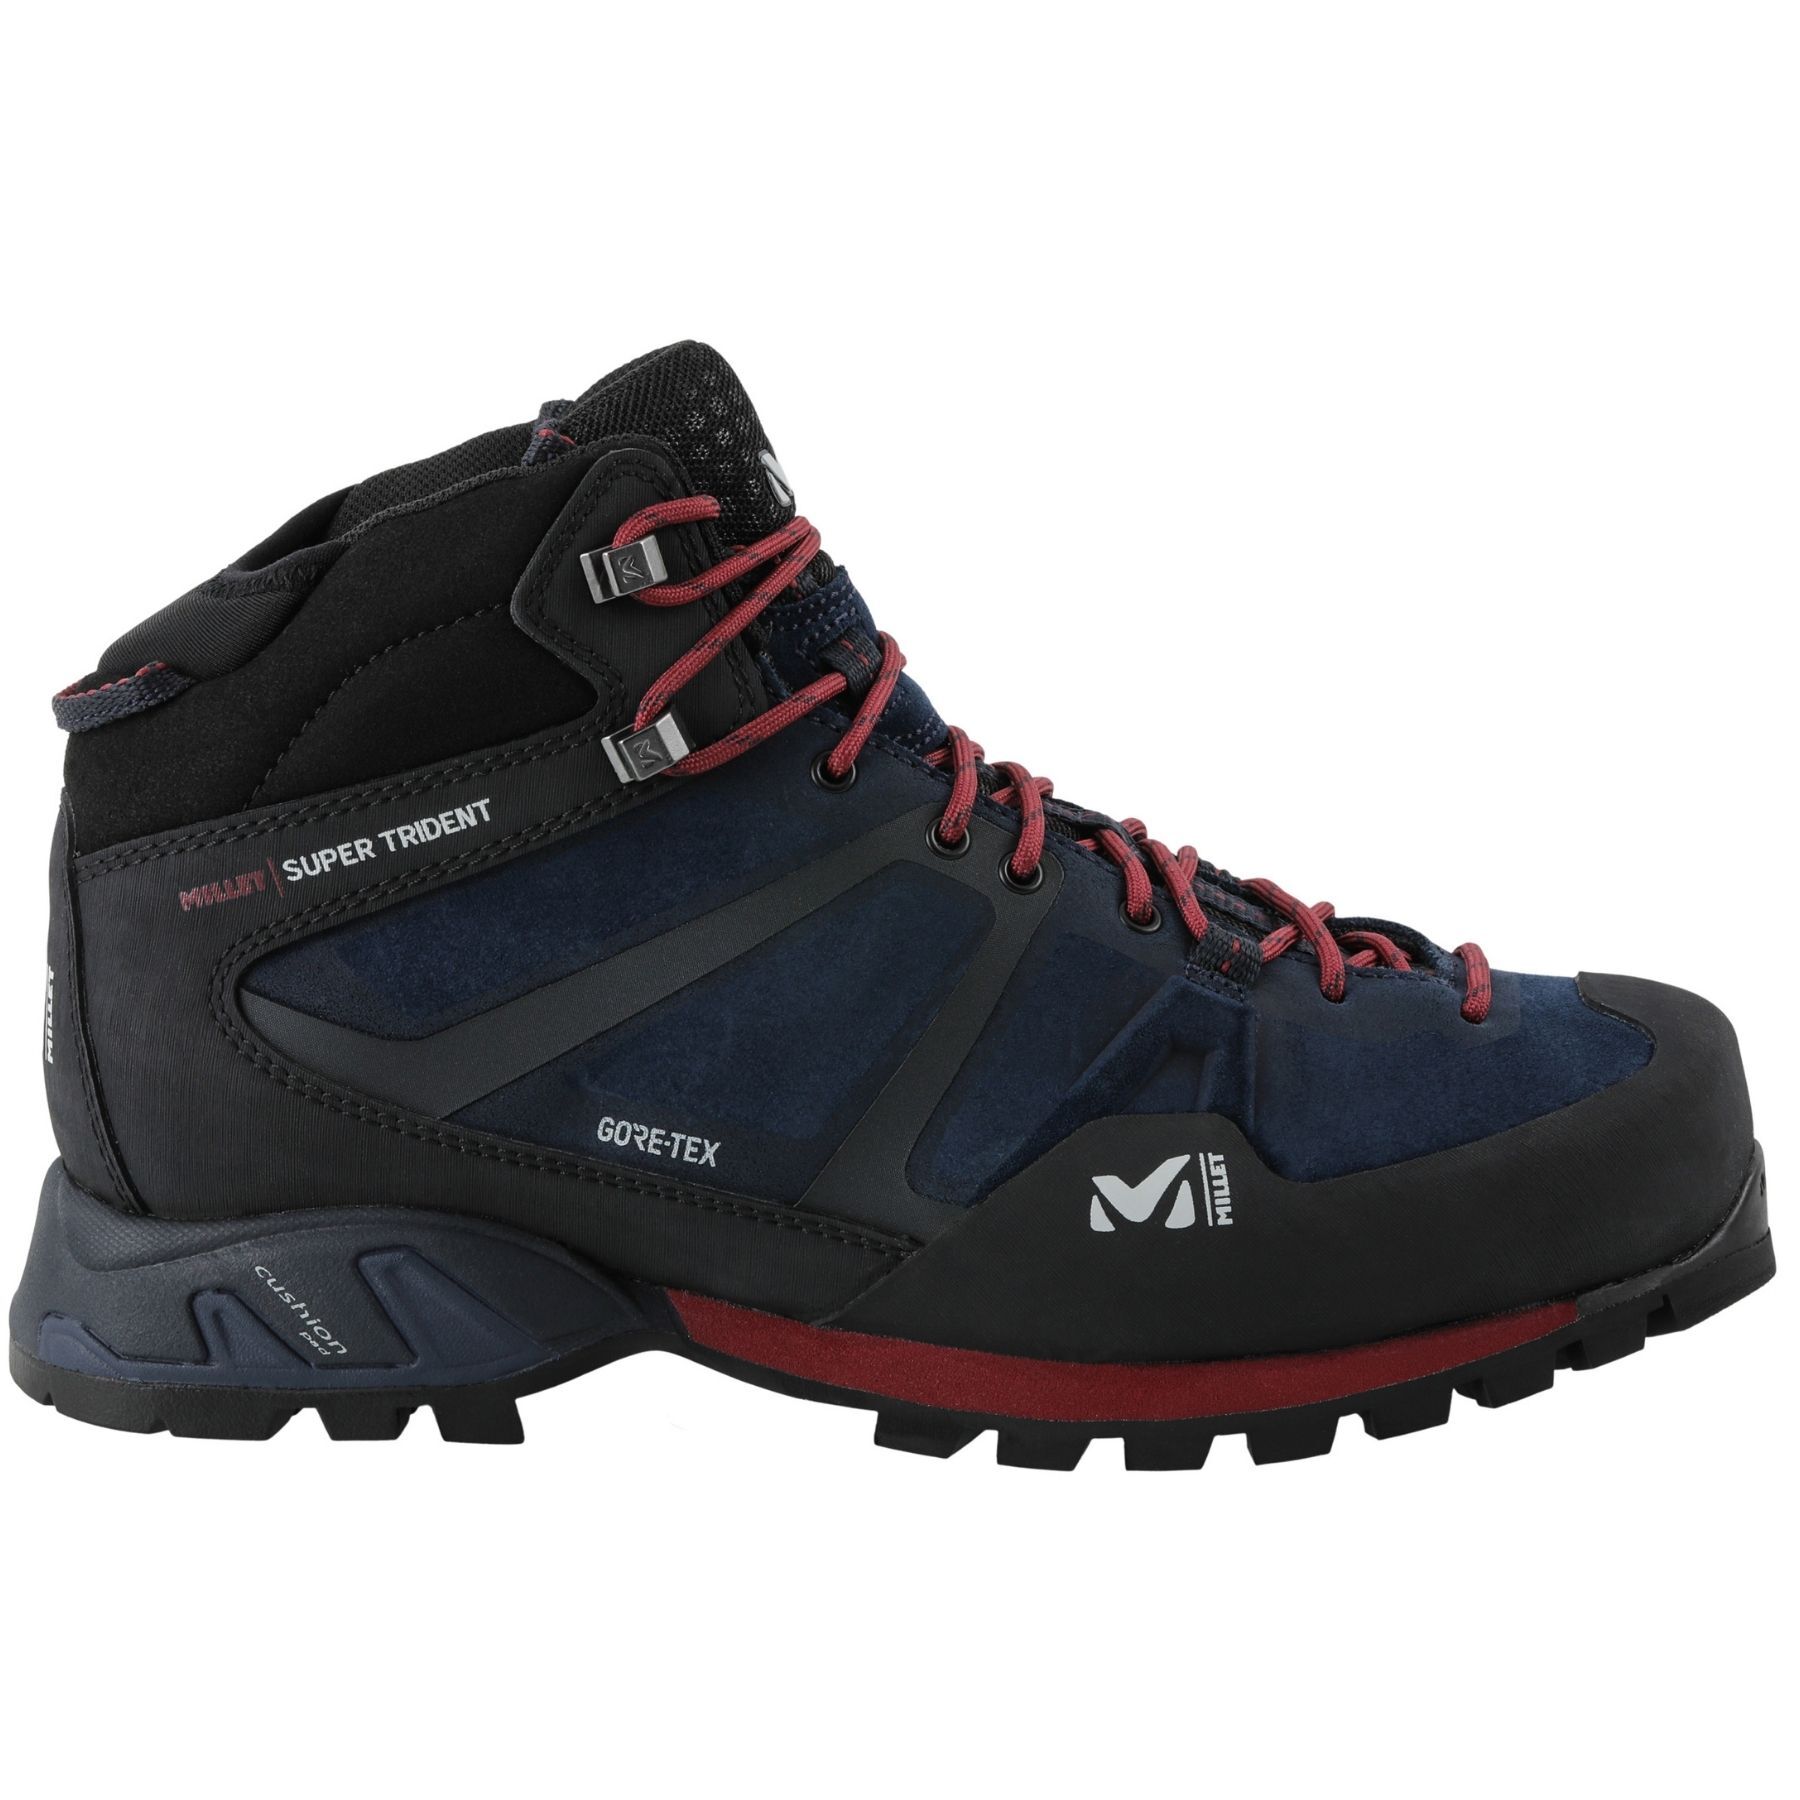 Millet Ld Super Trident Gtx - Hiking Boots Women's